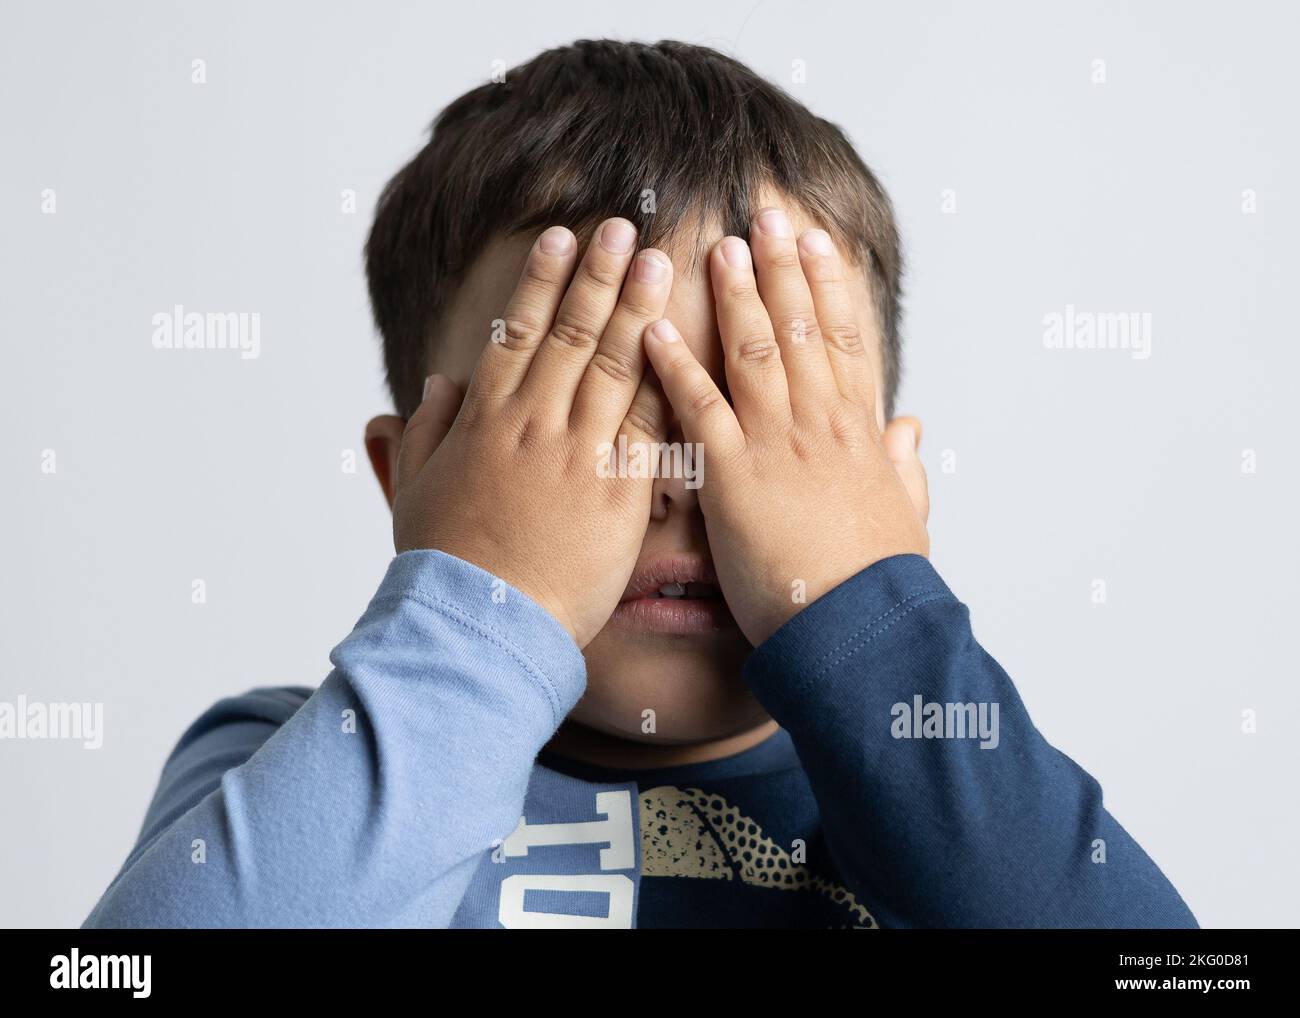 Ein Mann, der etwa 4 Jahre alt ist und mit den Händen im Gesicht Emotionen ausdrückt Stockfoto